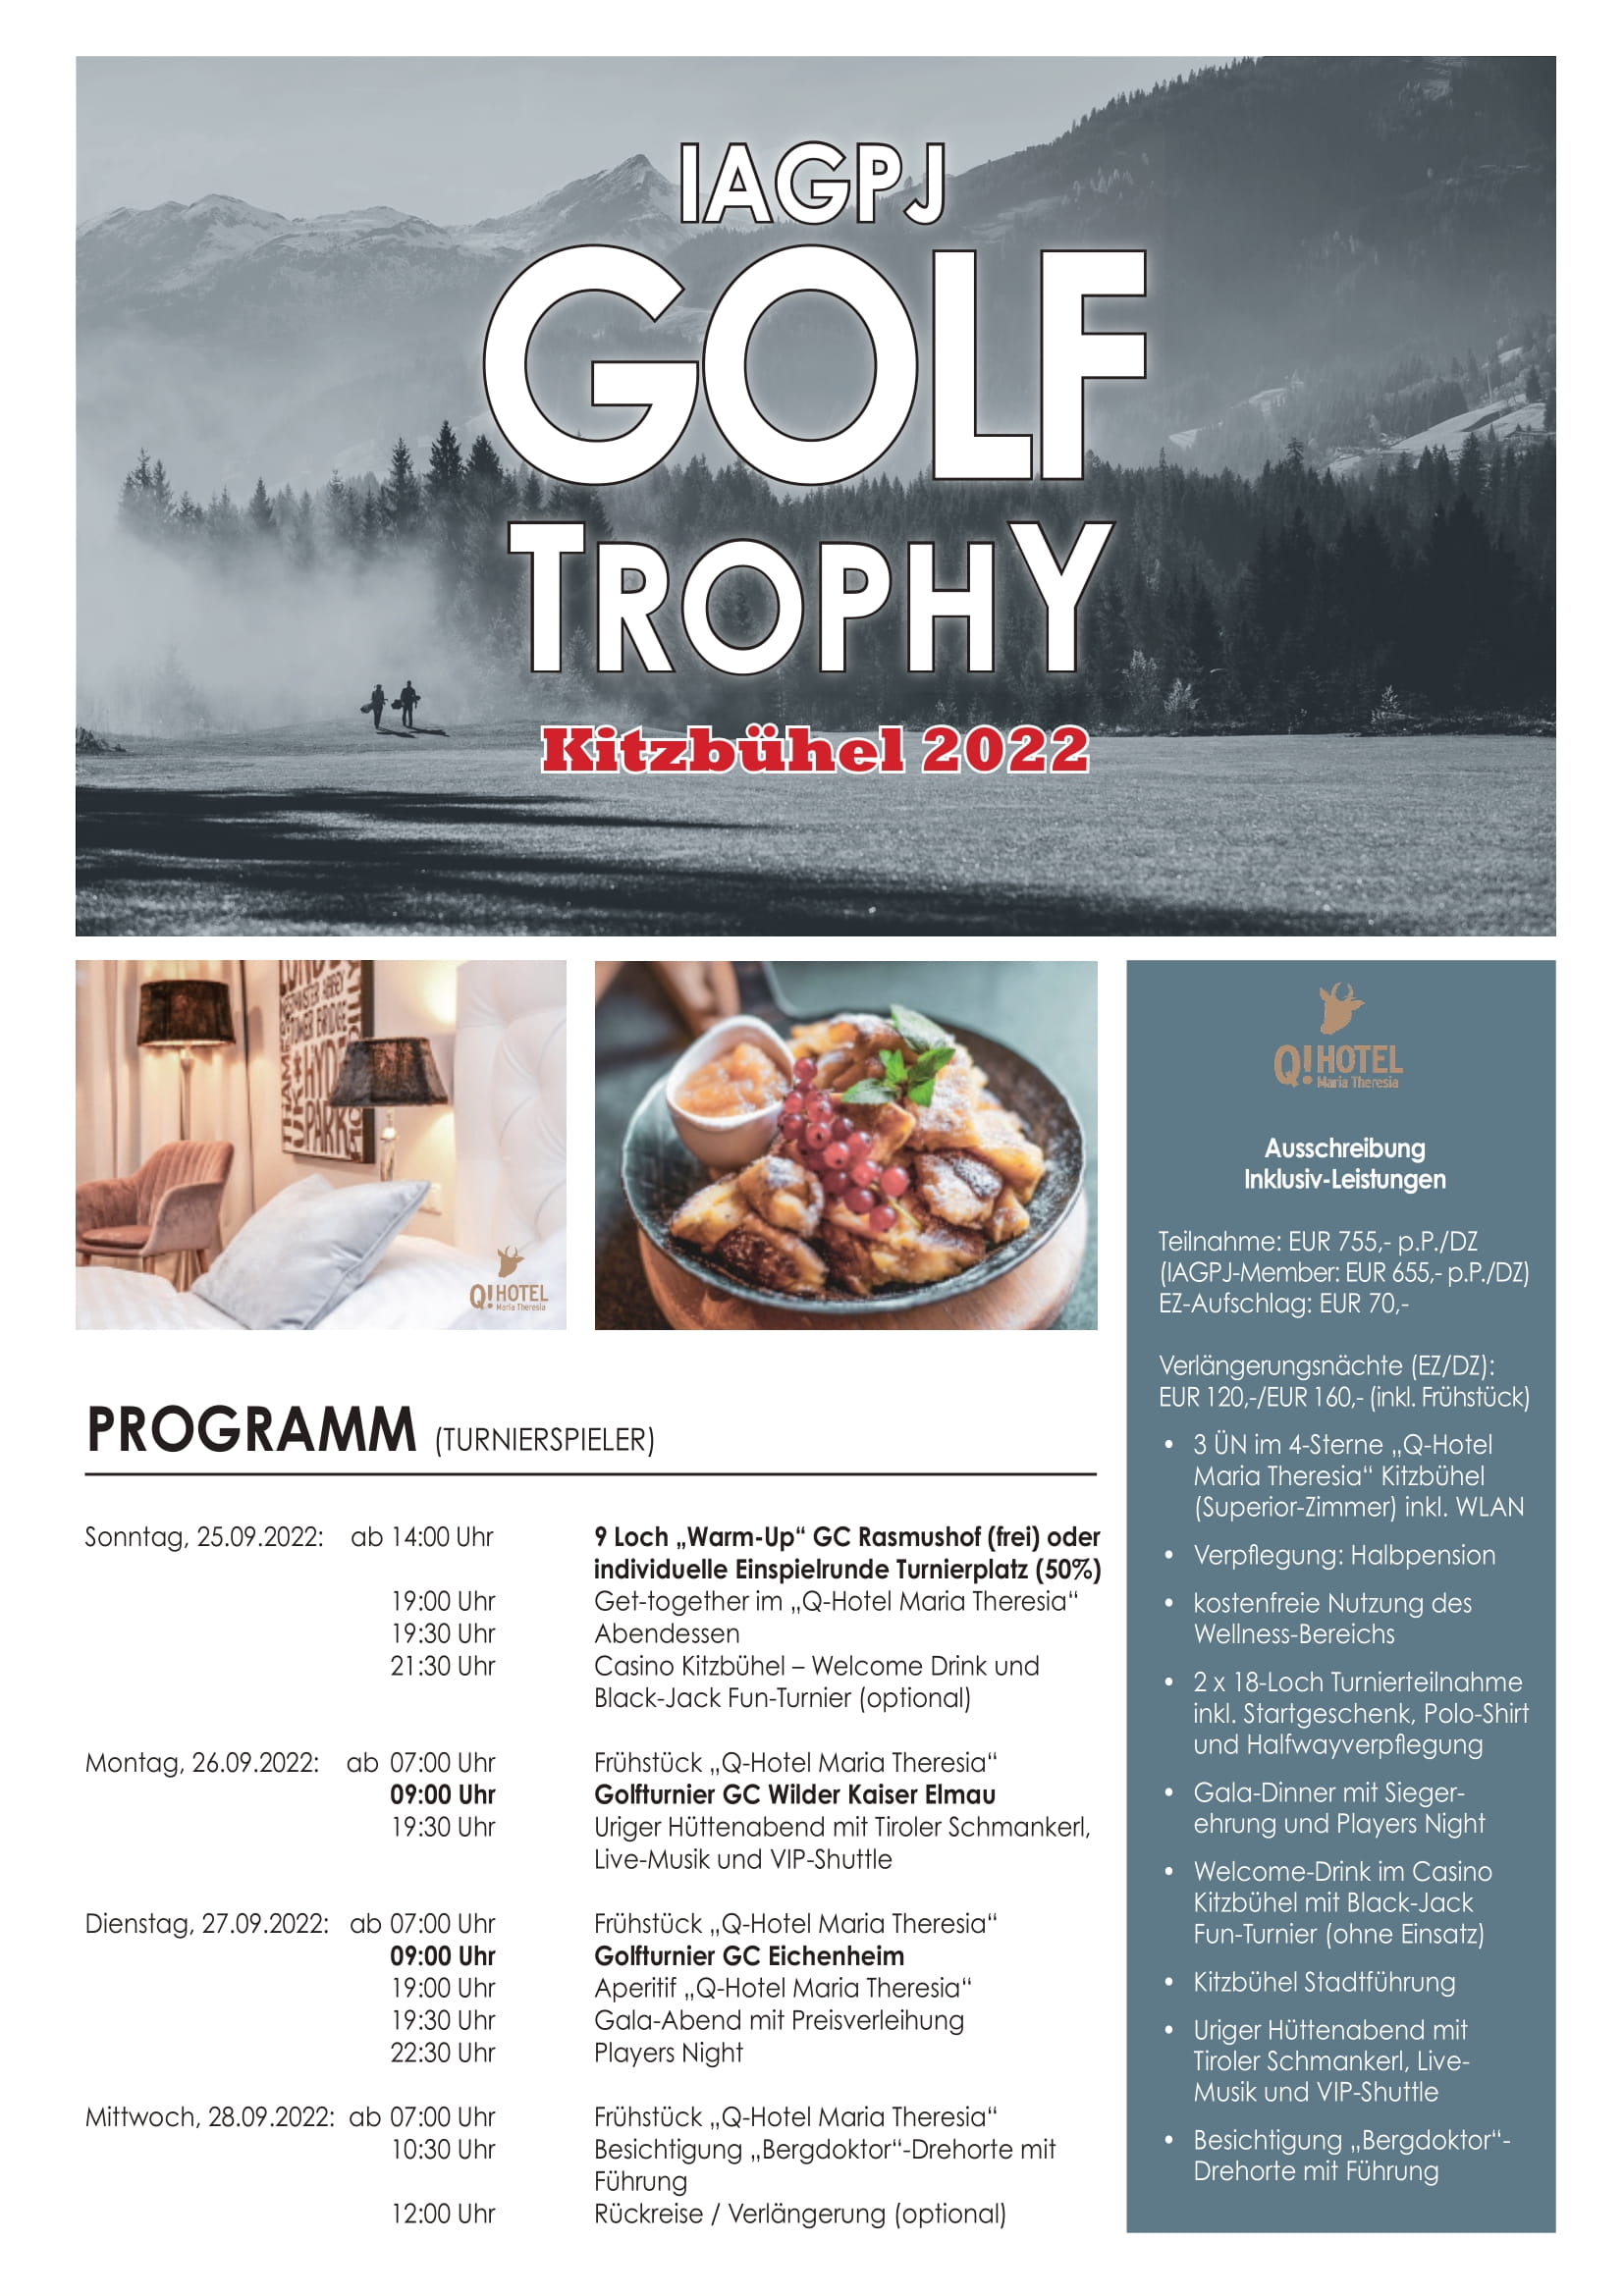 IAGPJ_Golf_Trophy_Kitzbühel_2022_Ausschreibung-1.jpg